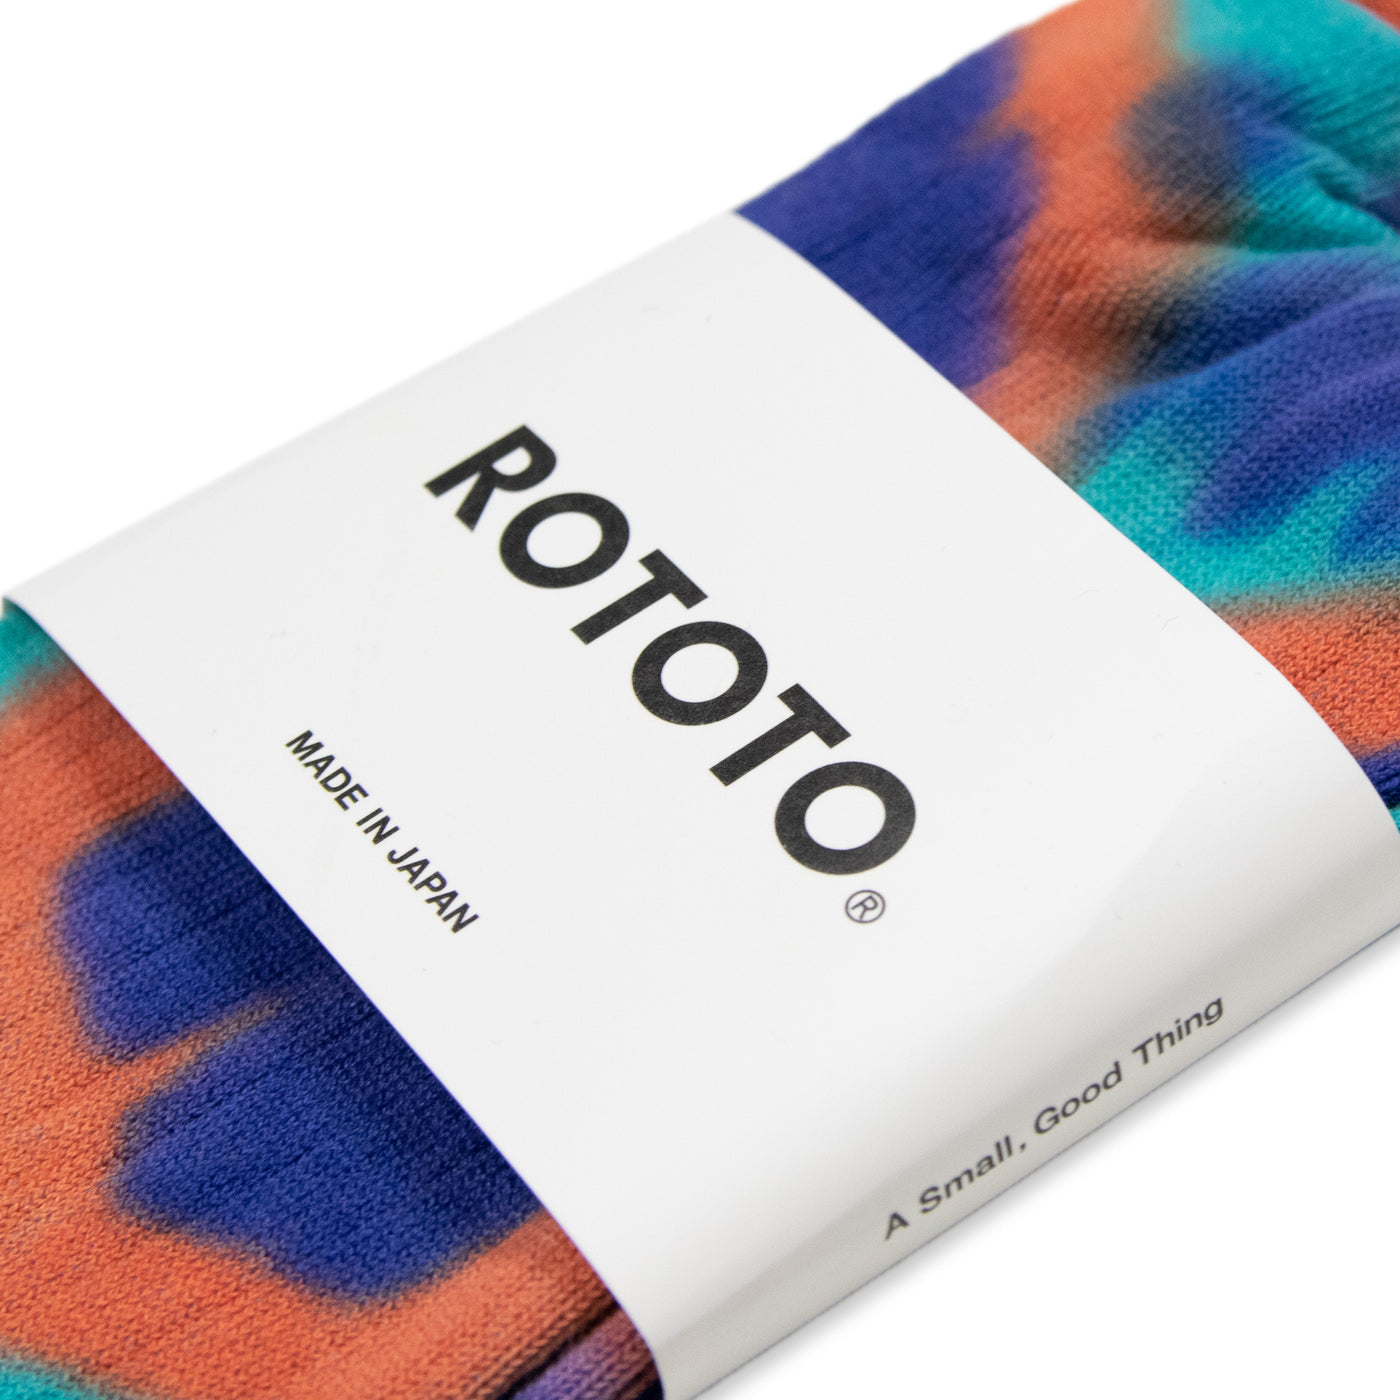 Rototo Tie Dye Formal Crew Socks Blue / Orange / Turquoise  Made In Japan  Packaging 